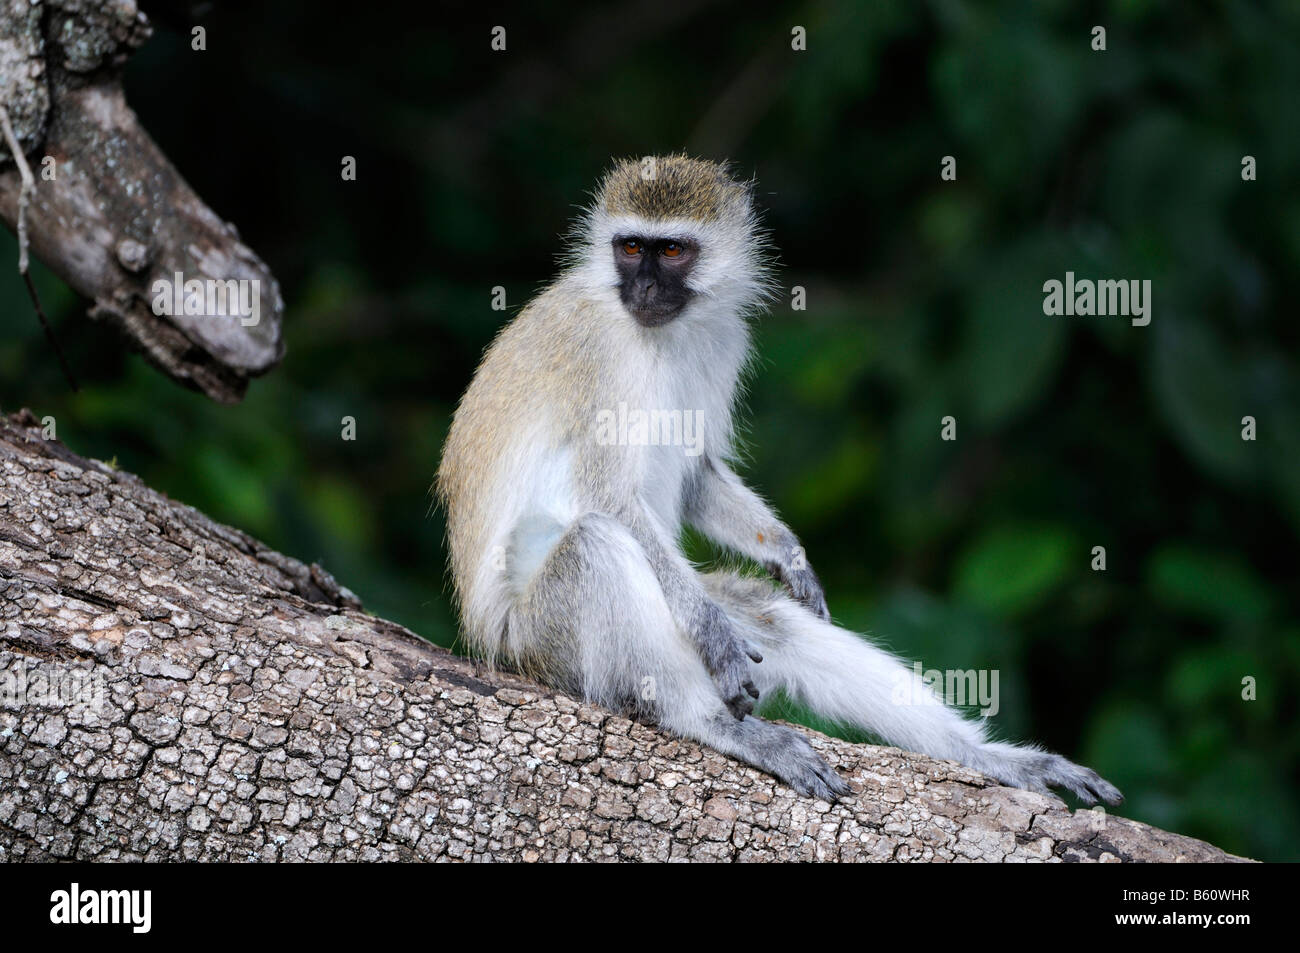 Singe vert (Chlorocebus ou Callithrix Monkey sabaeus), le Parc National de Nairobi, Kenya, Afrique de l'Est, l'Afrique Banque D'Images